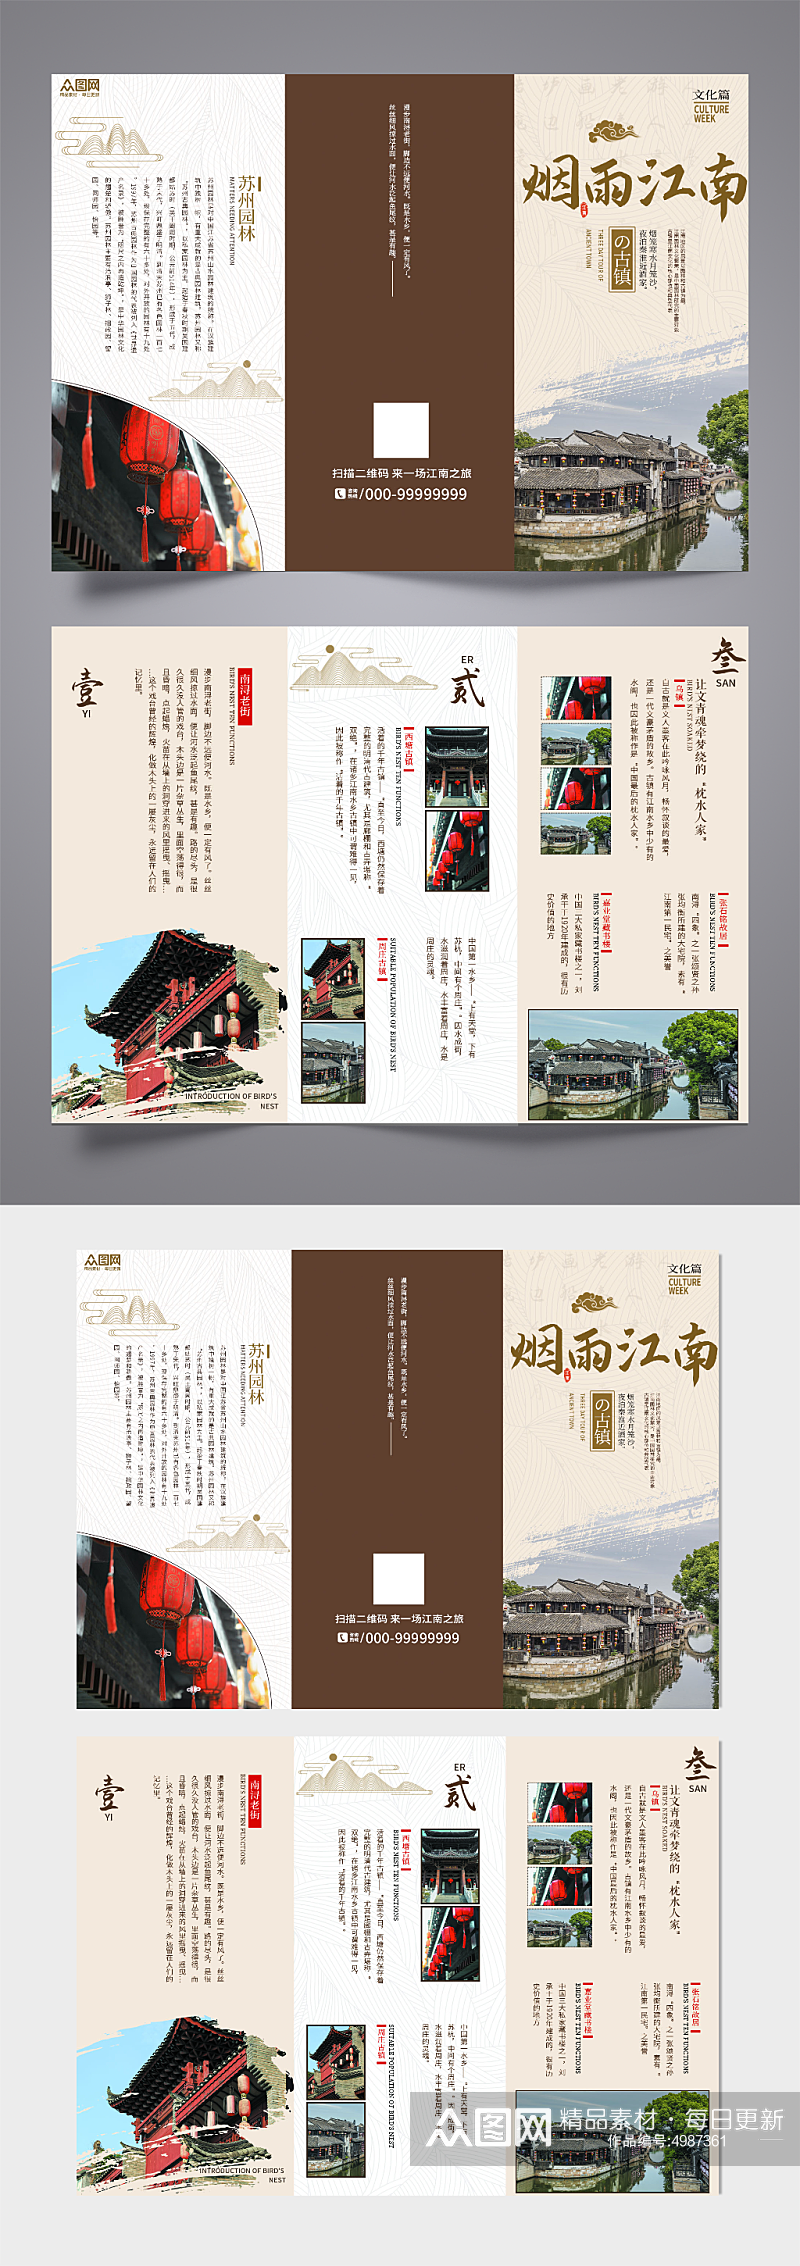 国风古建筑古镇文化旅游宣传三折页素材